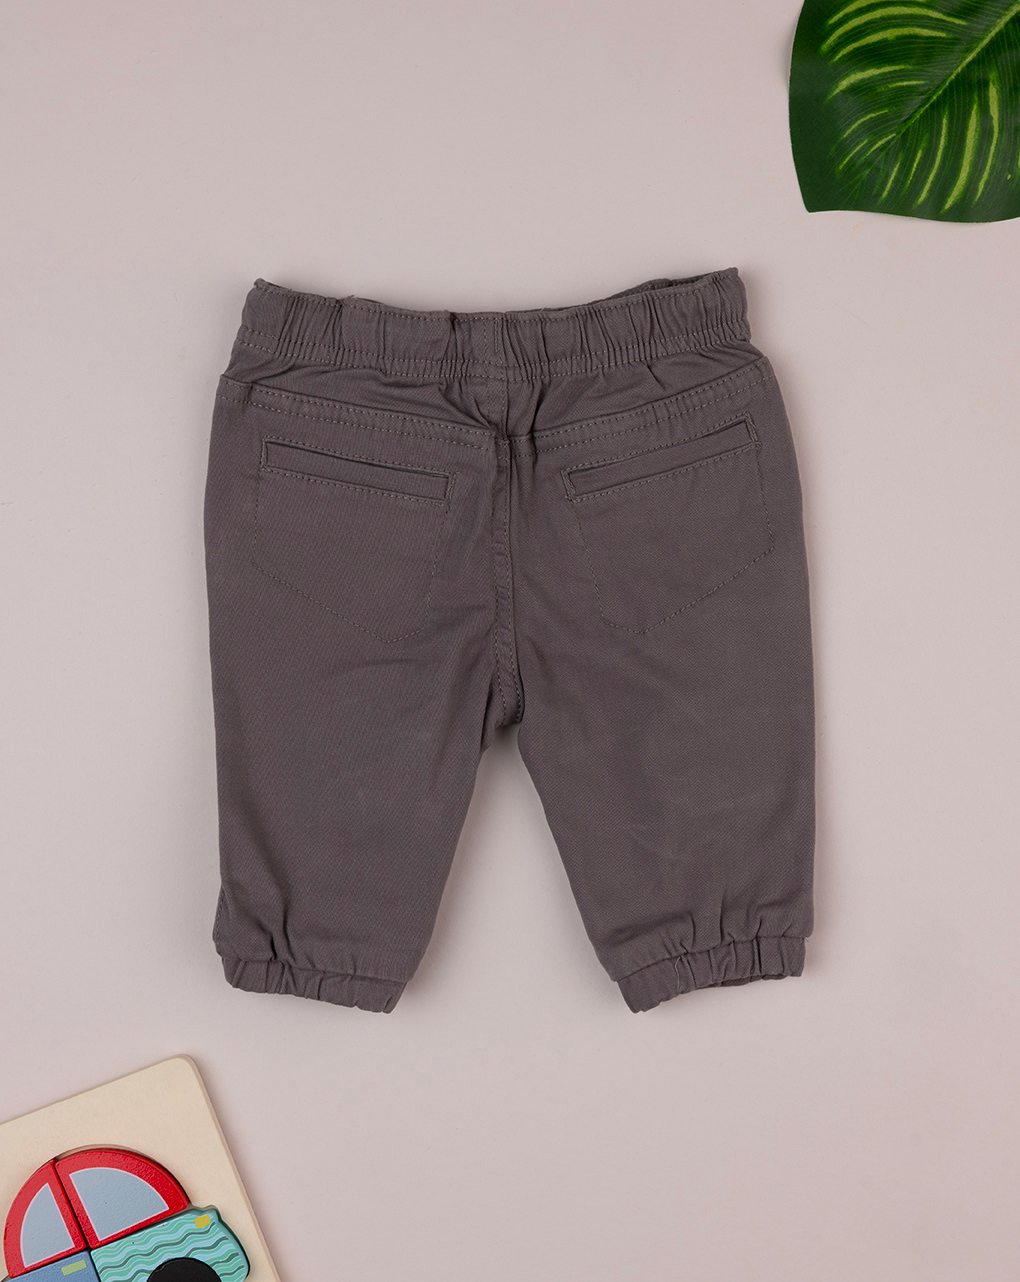 βρεφικό παντελόνι twill γκρι για αγόρι - Prénatal